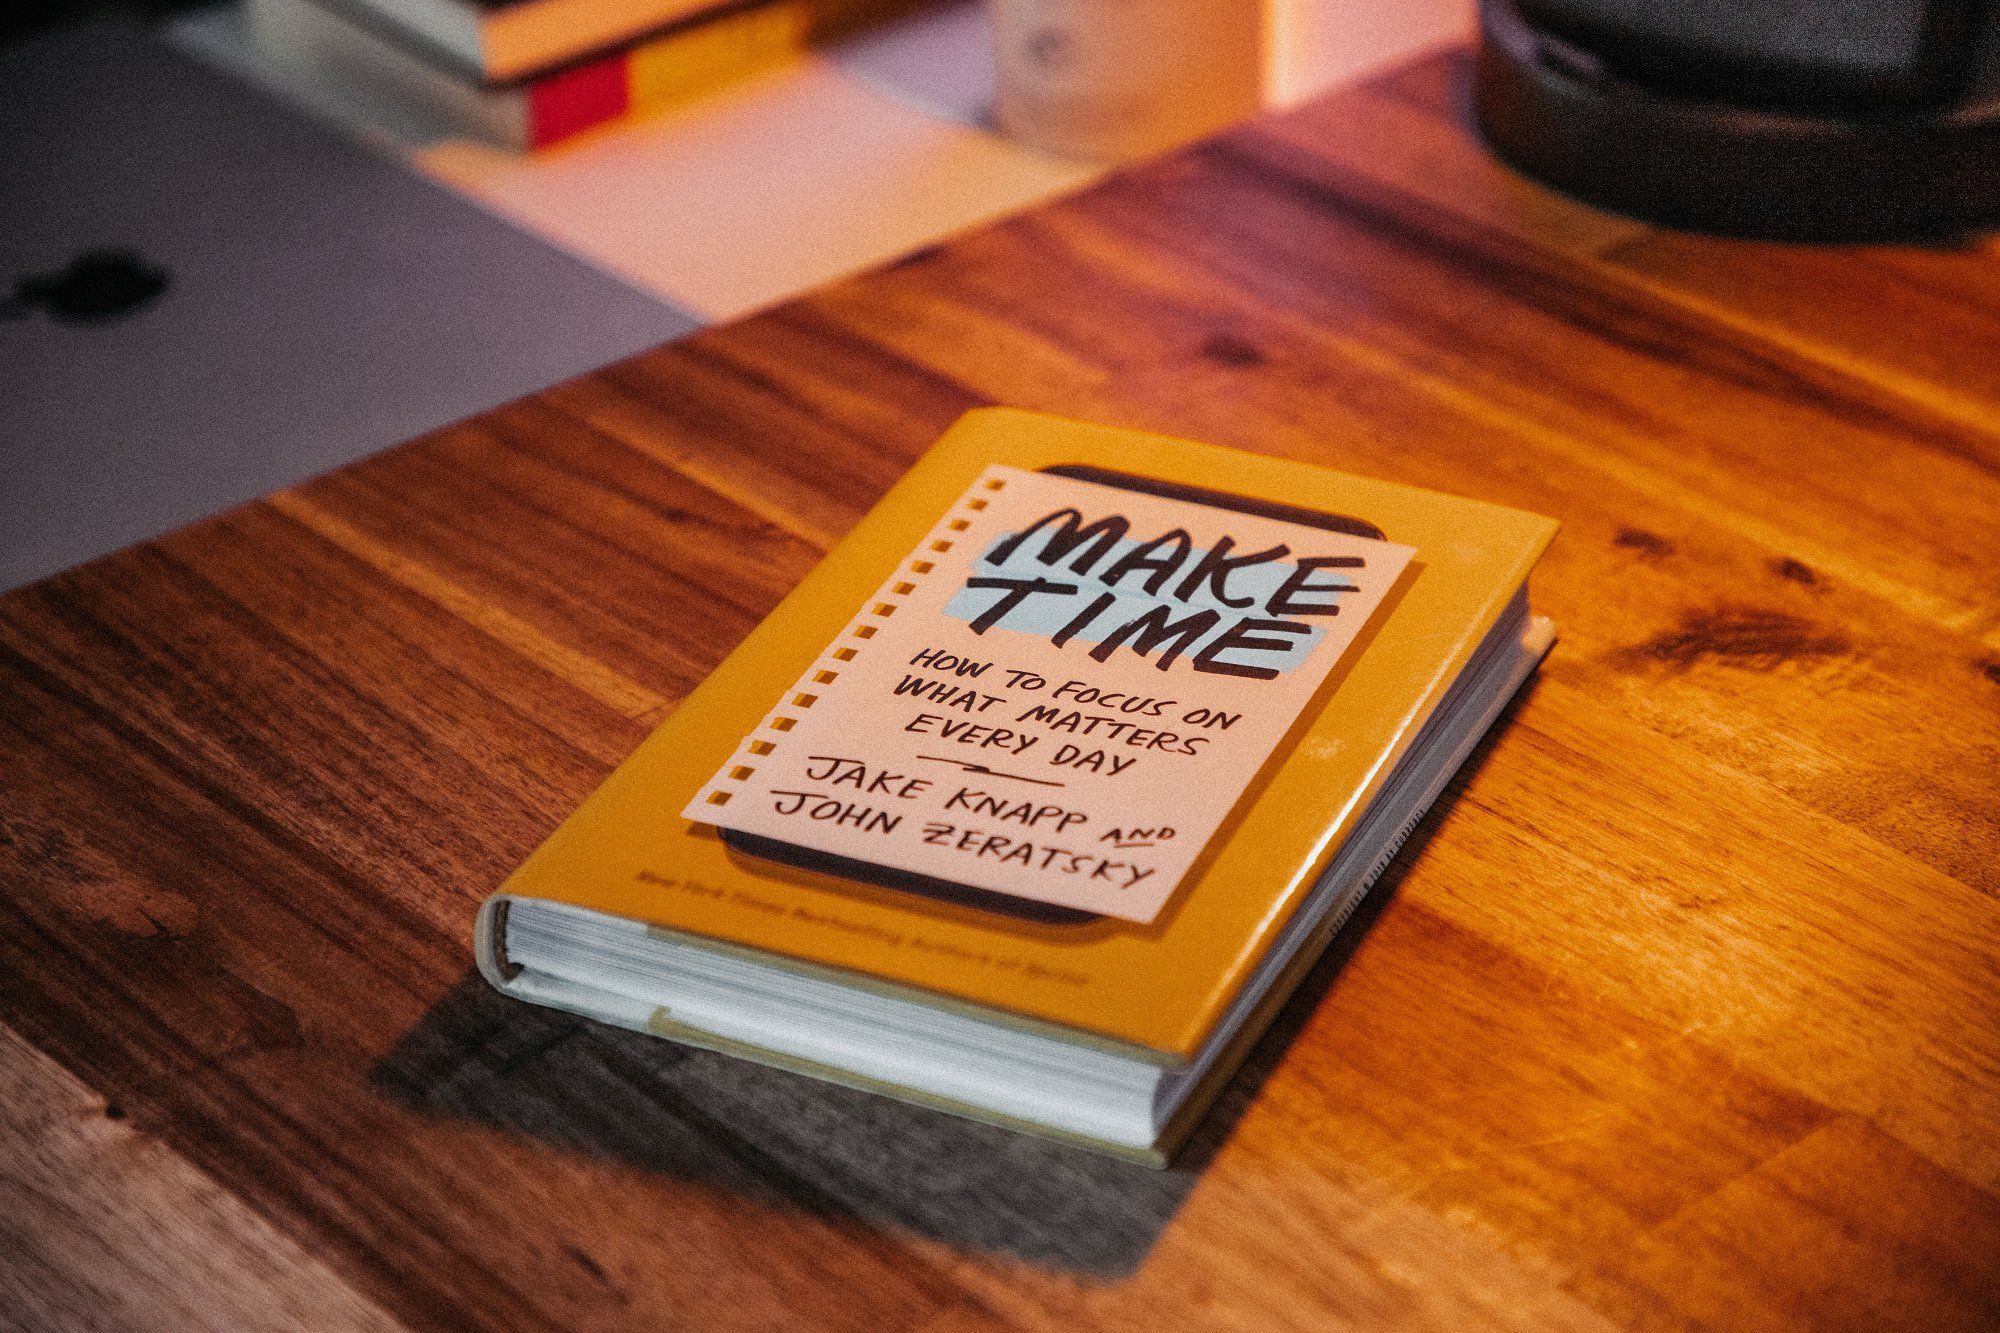 A Make Time book by Jake Knapp and John Zeratsky lying on a desk